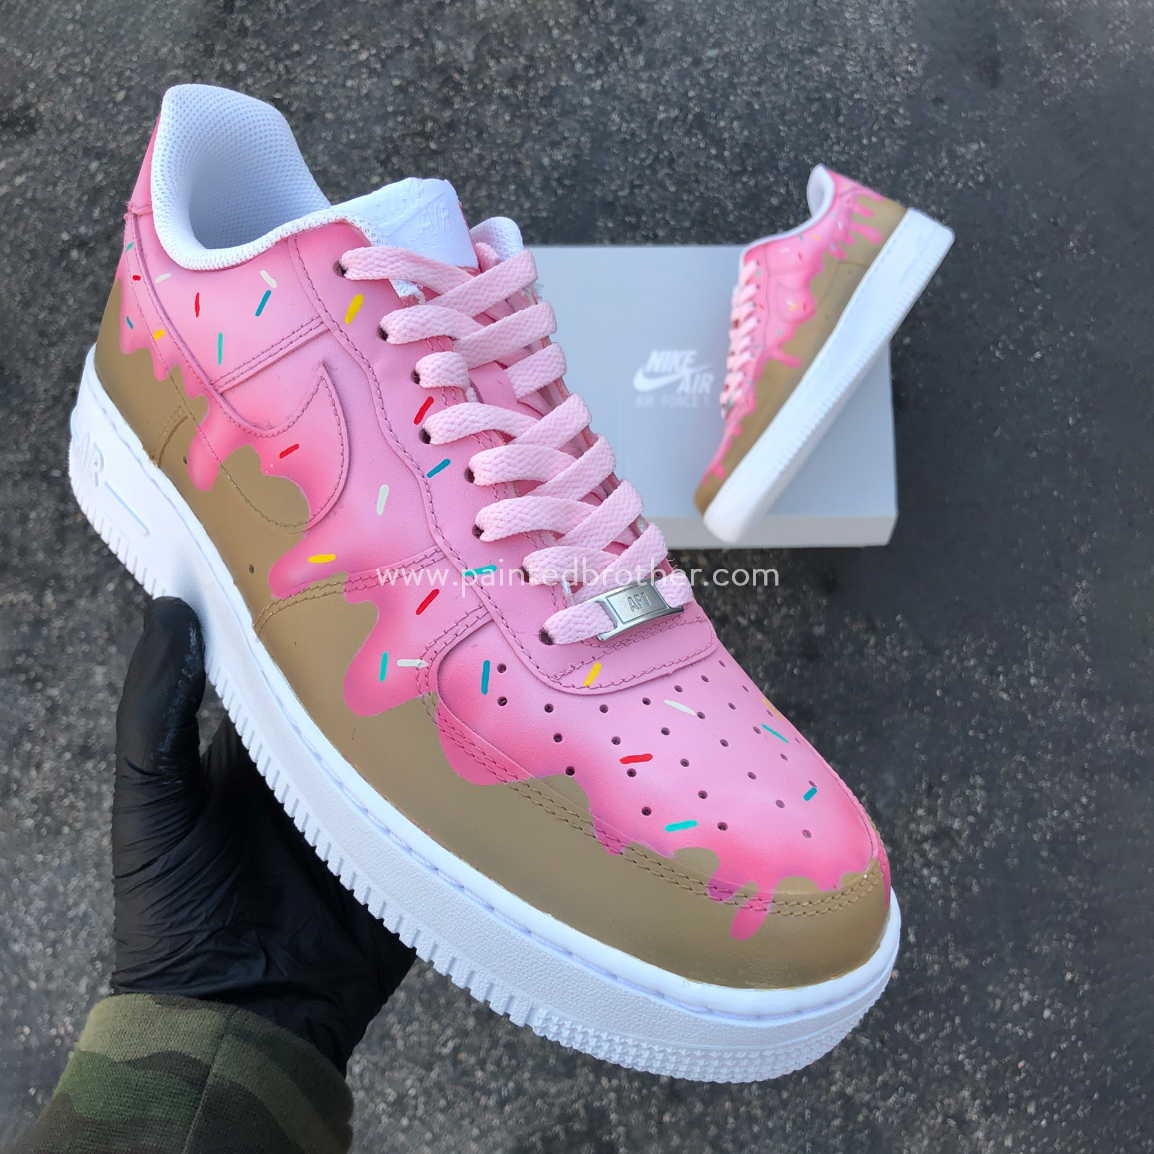 Custom Sneakers Pink Frosting Sprinkle Donut Nike Air Force 1's-paintedbrother